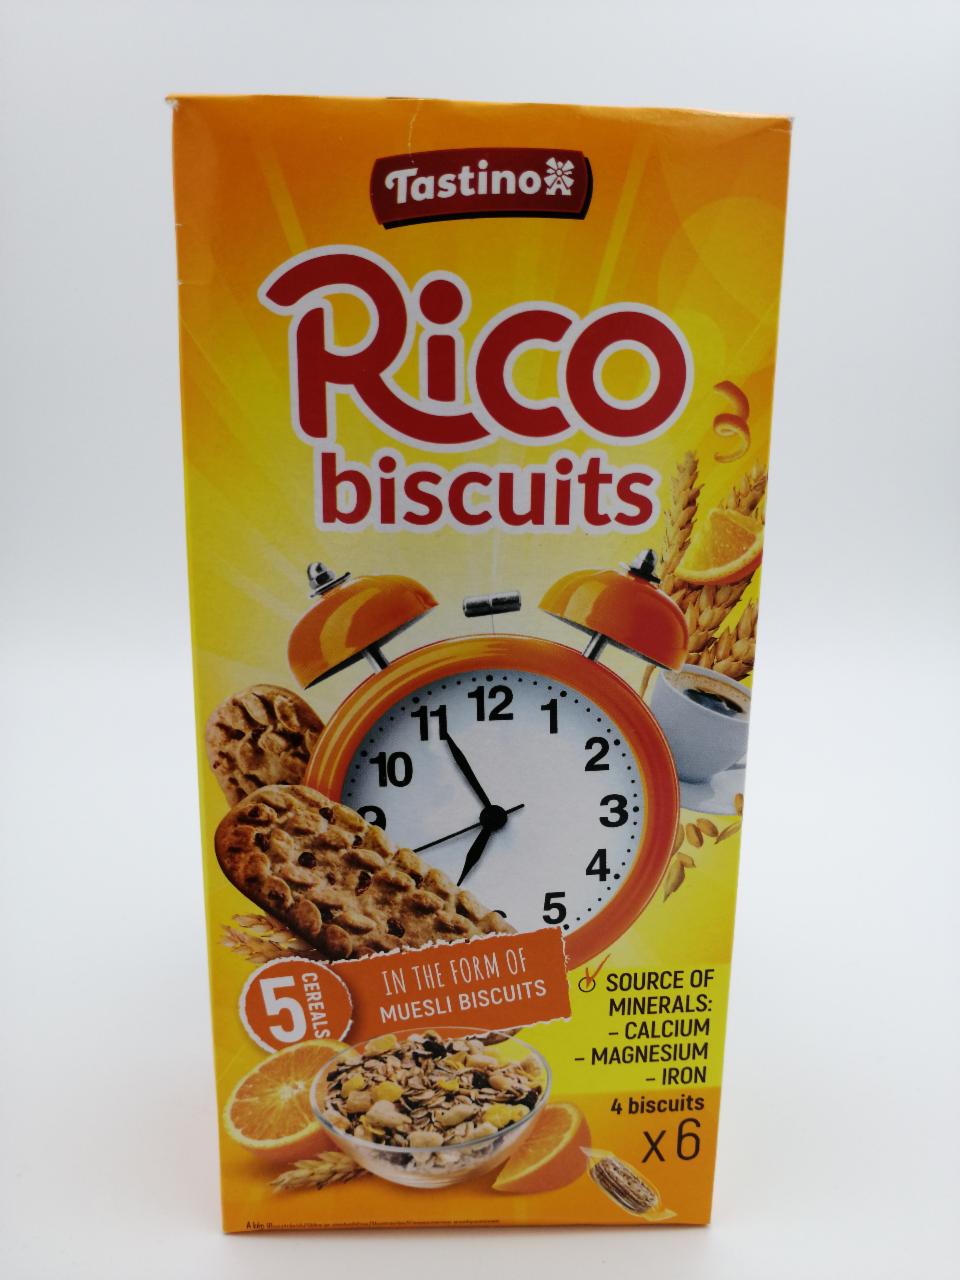 Képek - Rico biscuits Tastino